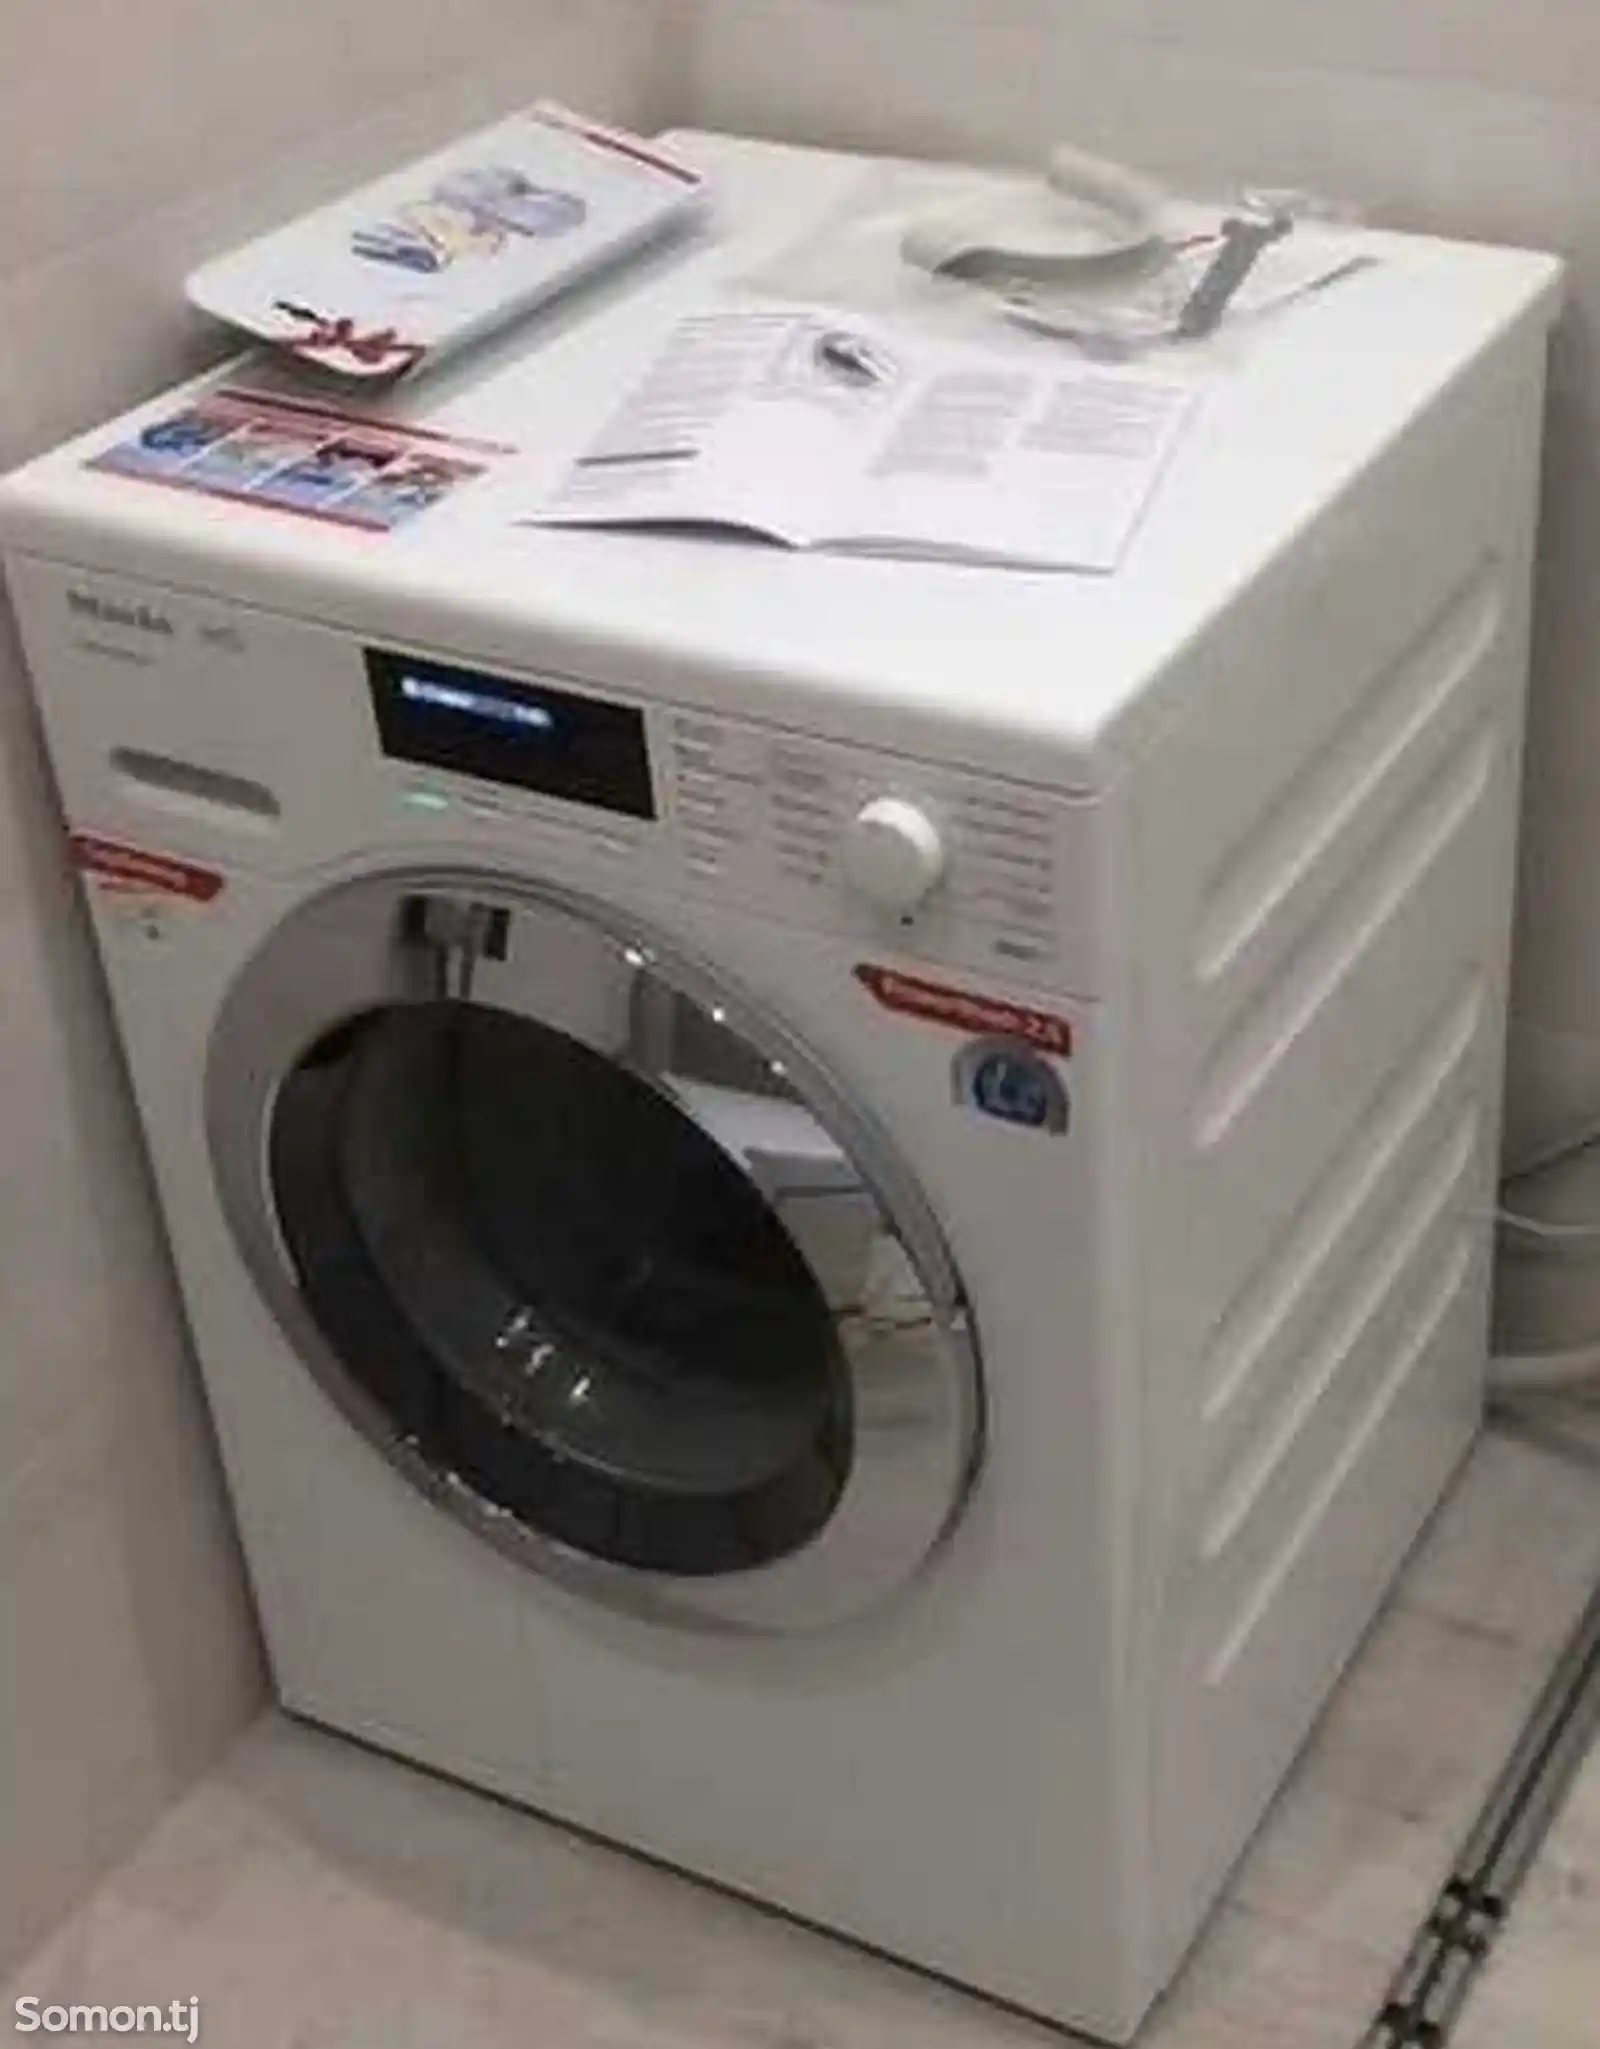 Ремонт стиральных машин- автомат